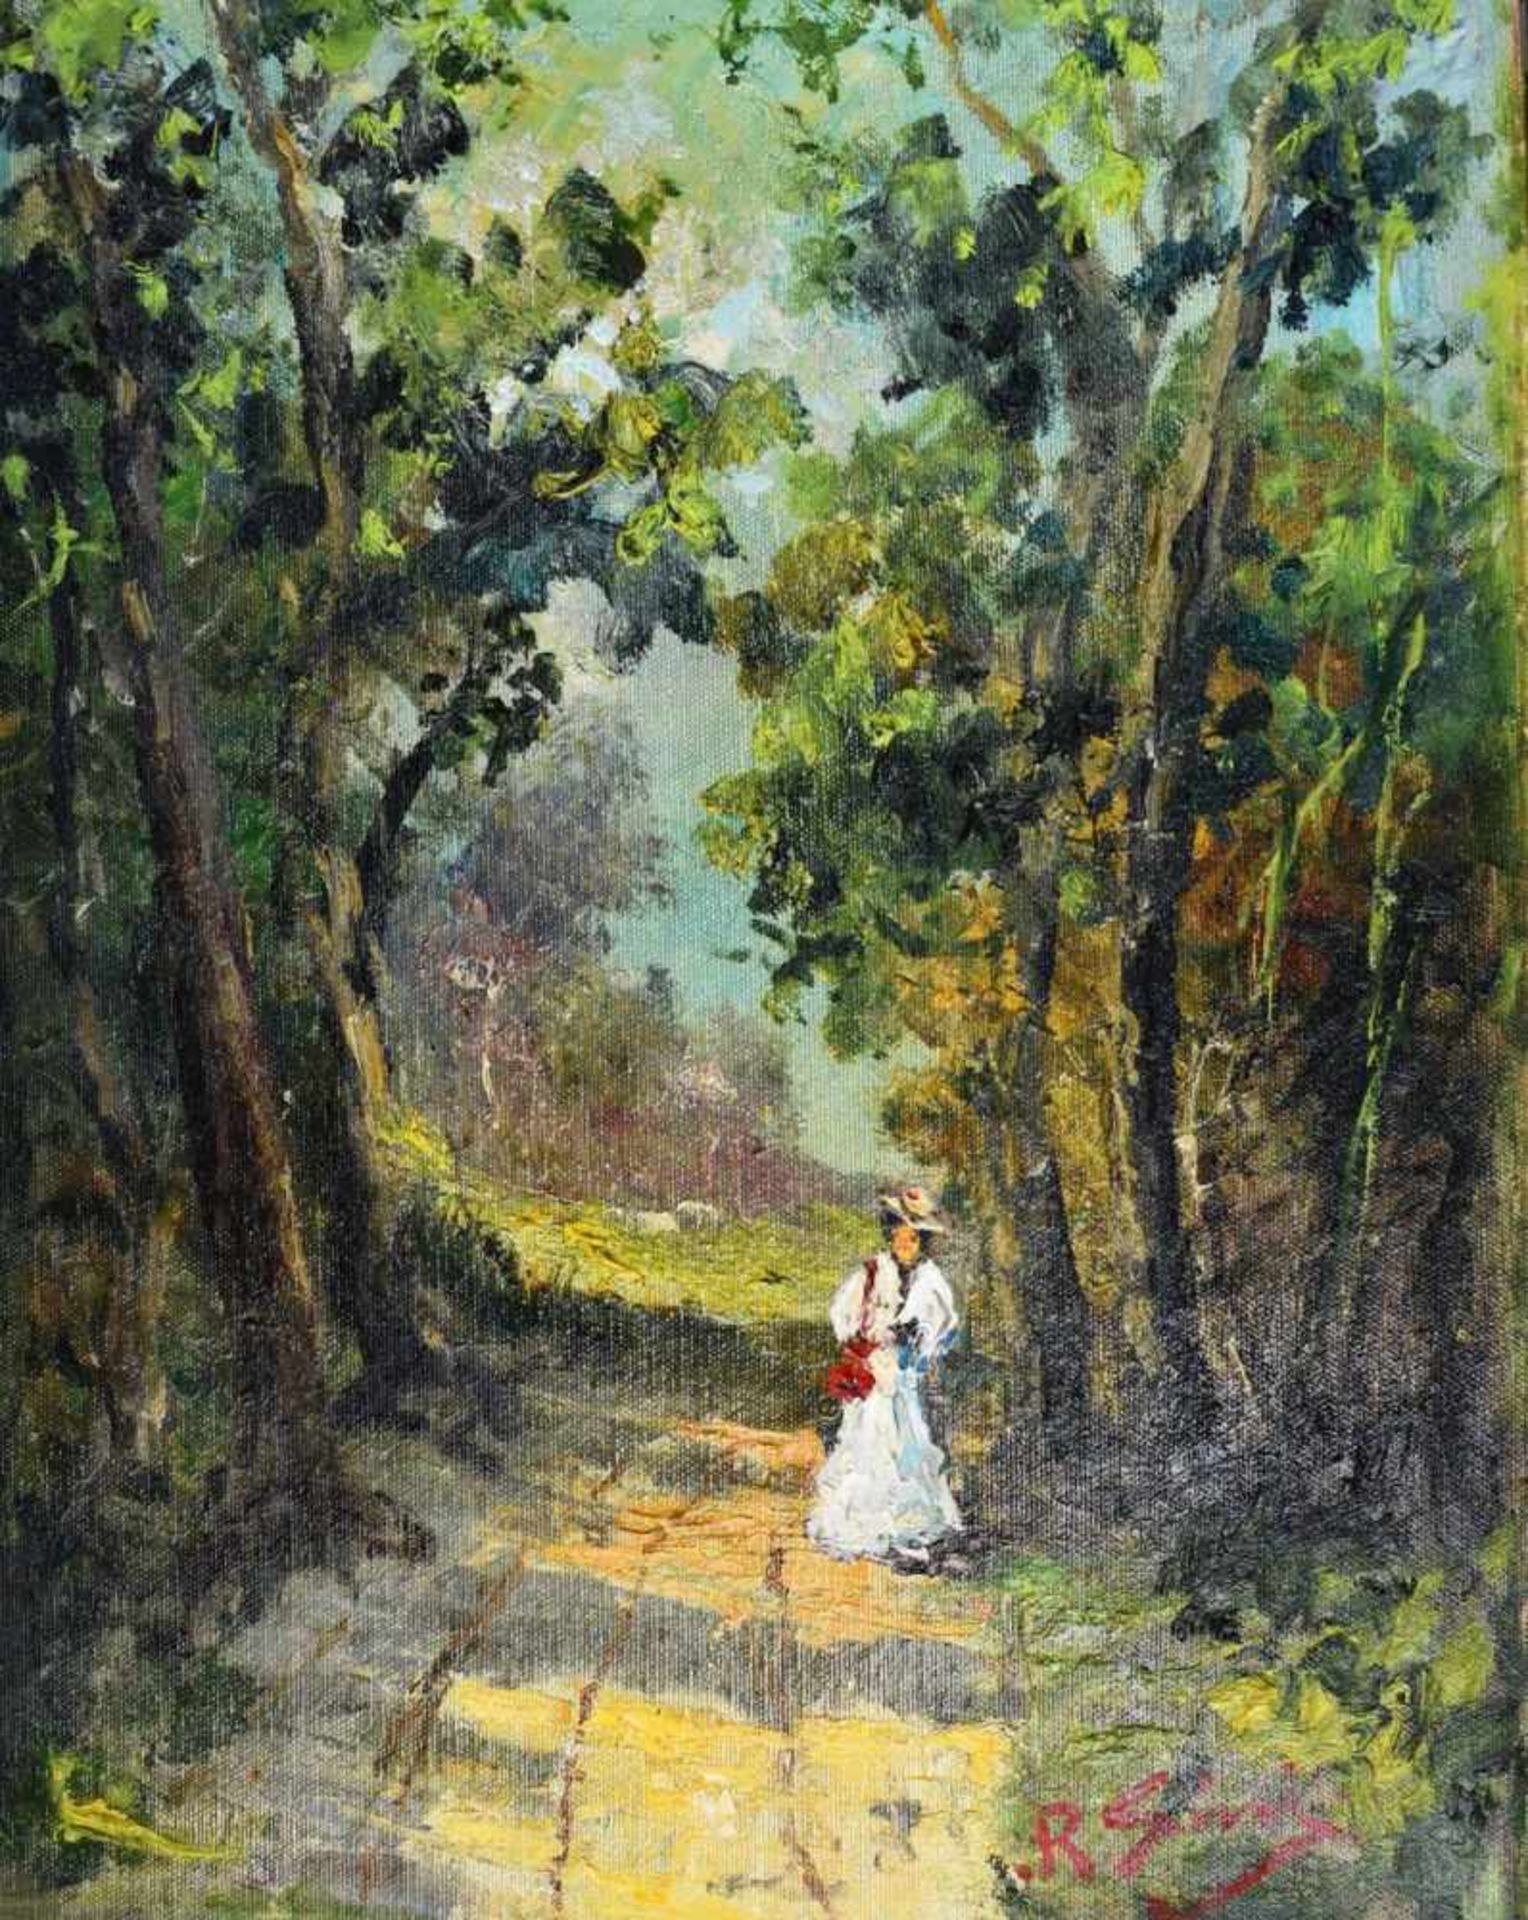 Sini, Riccardo (Capi um 1920), "Spaziergang im Wald"